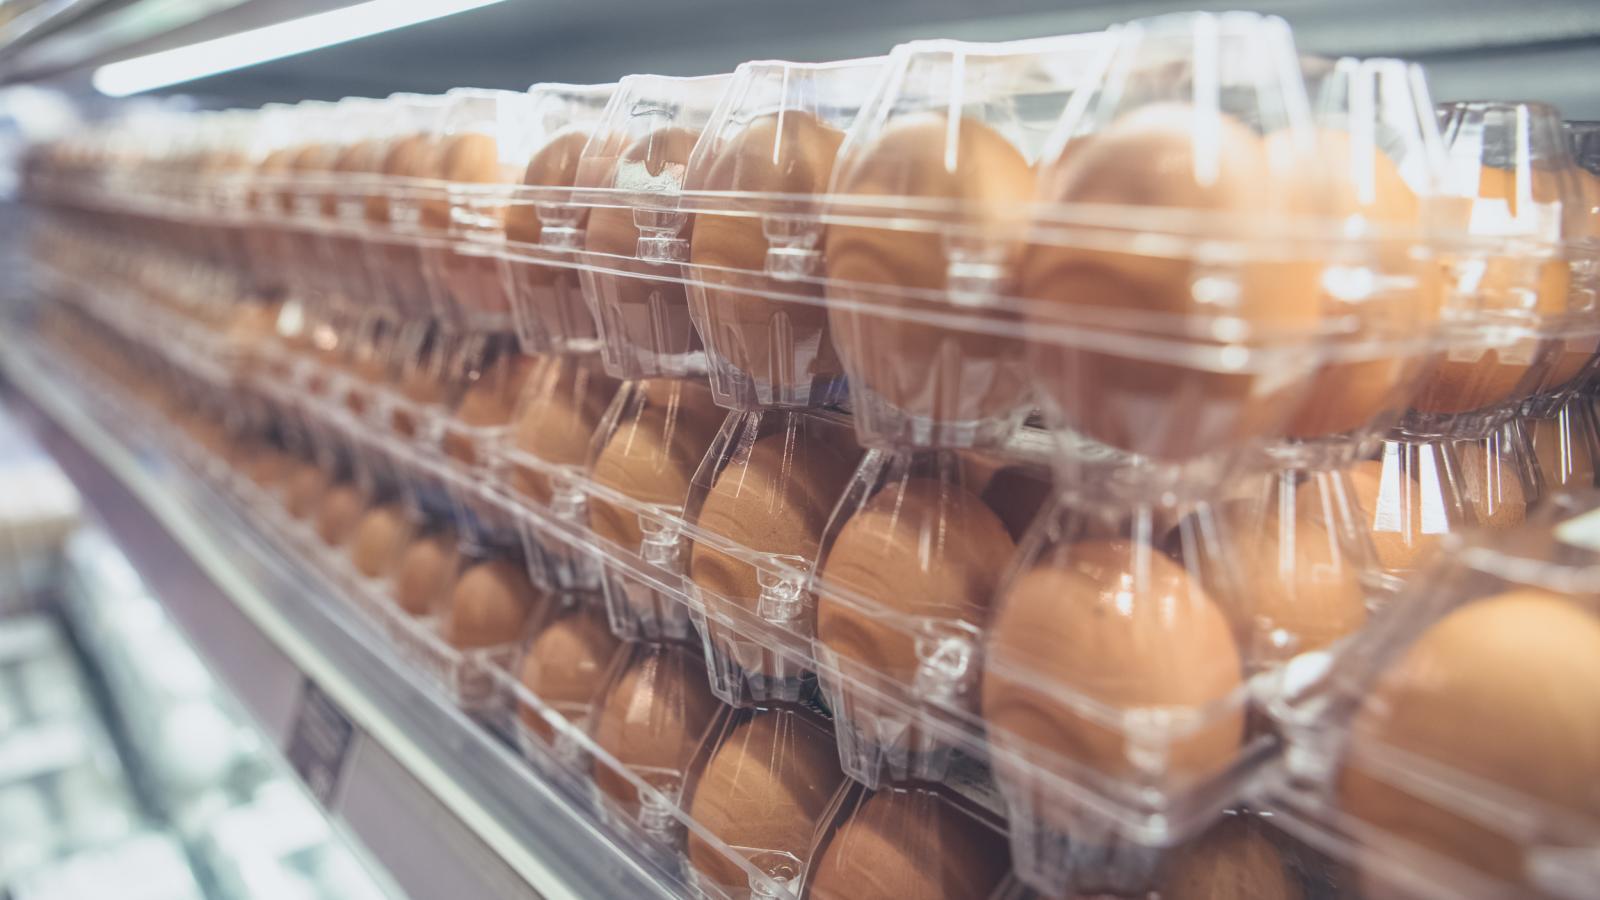 ФАС проверяет торговые сети из-за цен на яйца